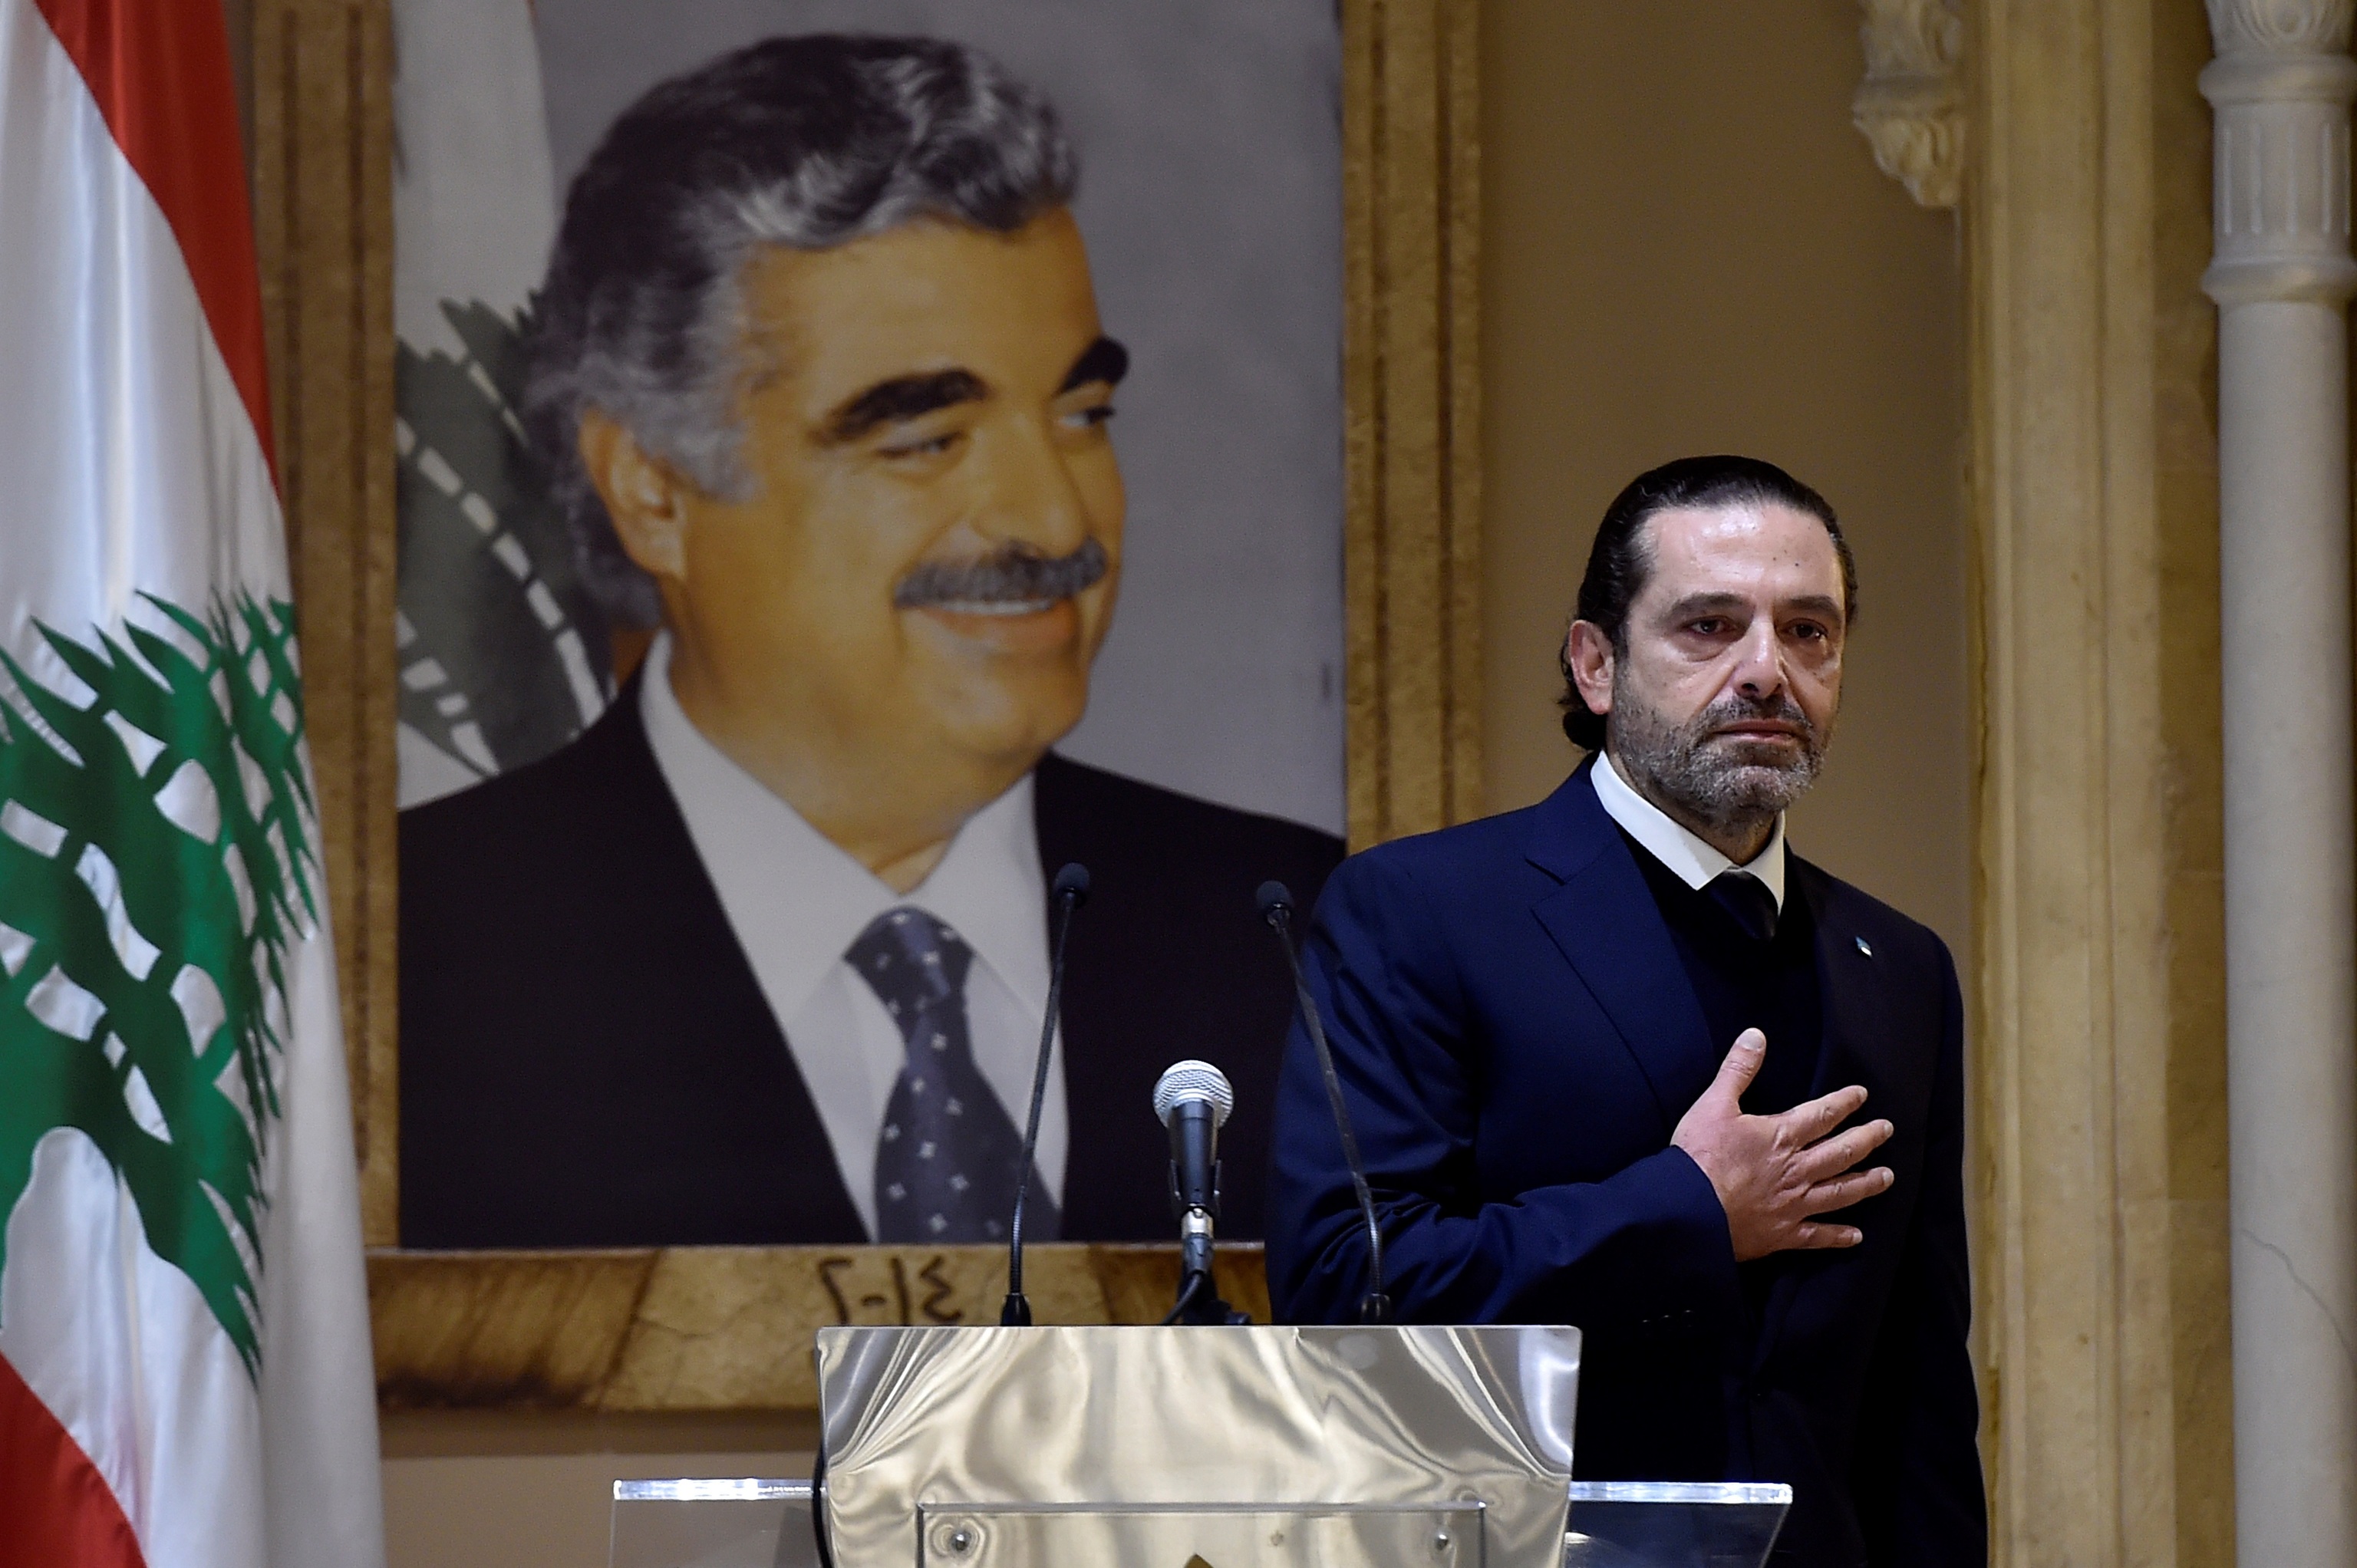 Saad Hariri announces his departure from politics